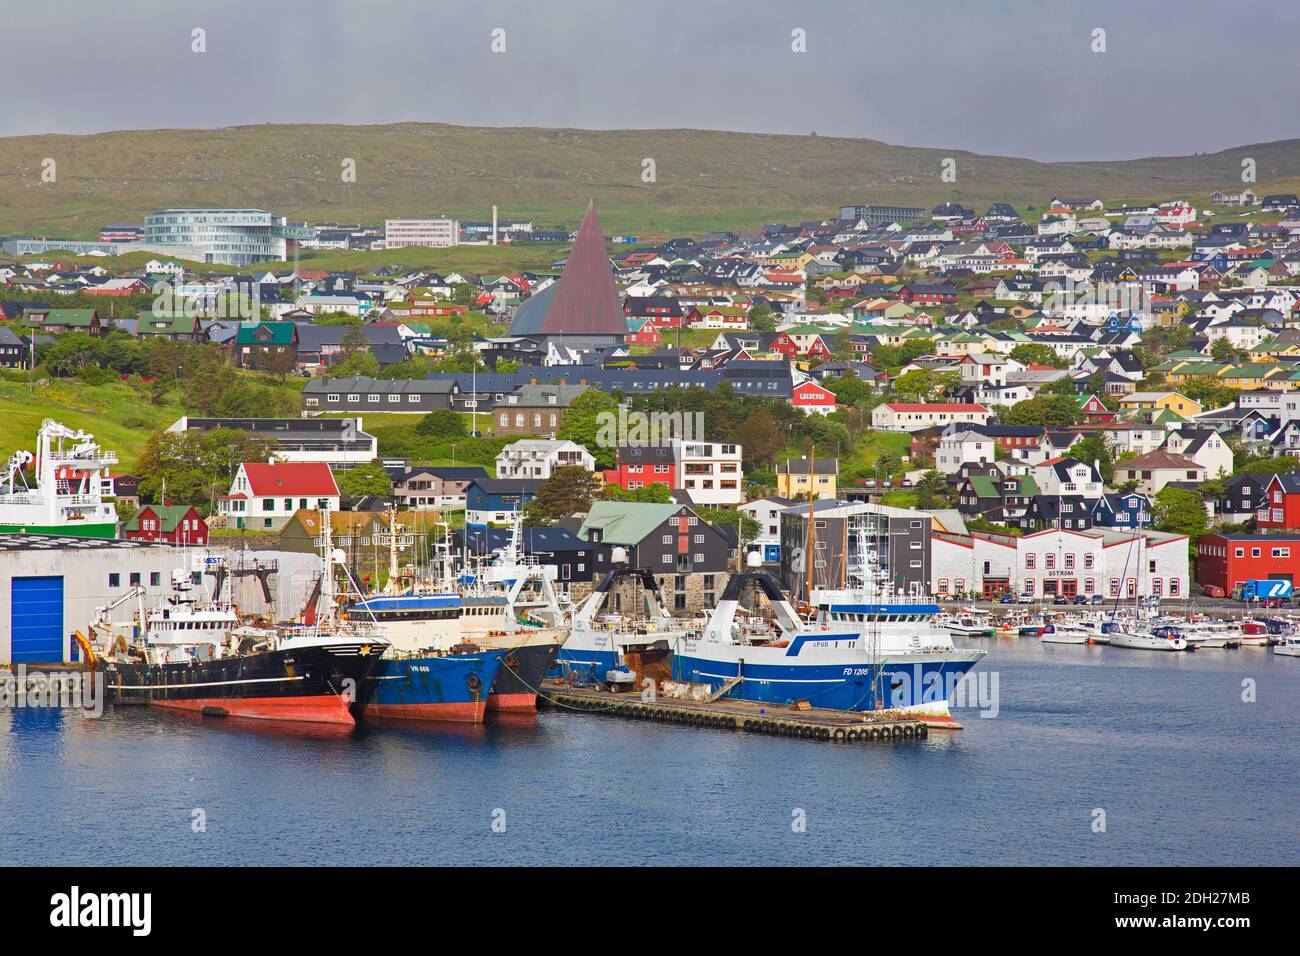 Bateaux de pêche dans le port / port de Torshavn, capitale et la plus grande ville des îles Féroé / Îles Féroé sur l'île de Streymoy Banque D'Images